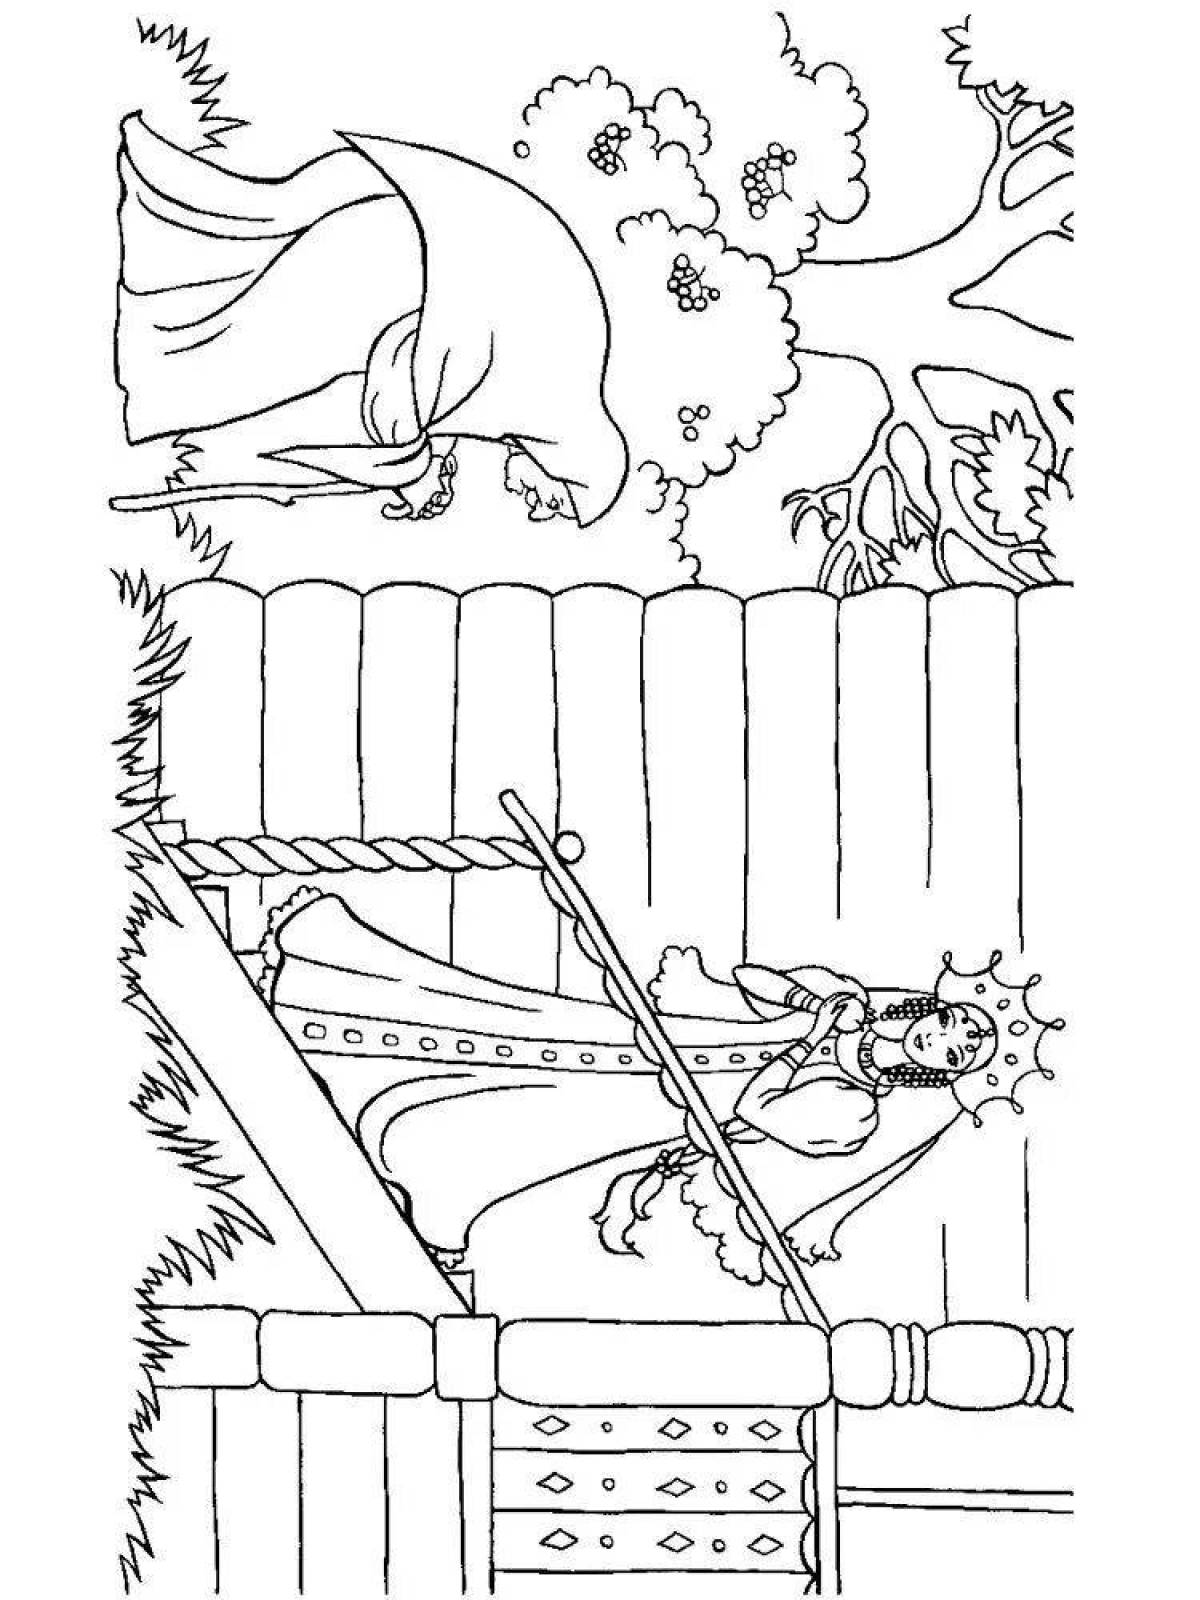 Иллюстрация к сказке о мертвой царевне и семи богатырях раскраска